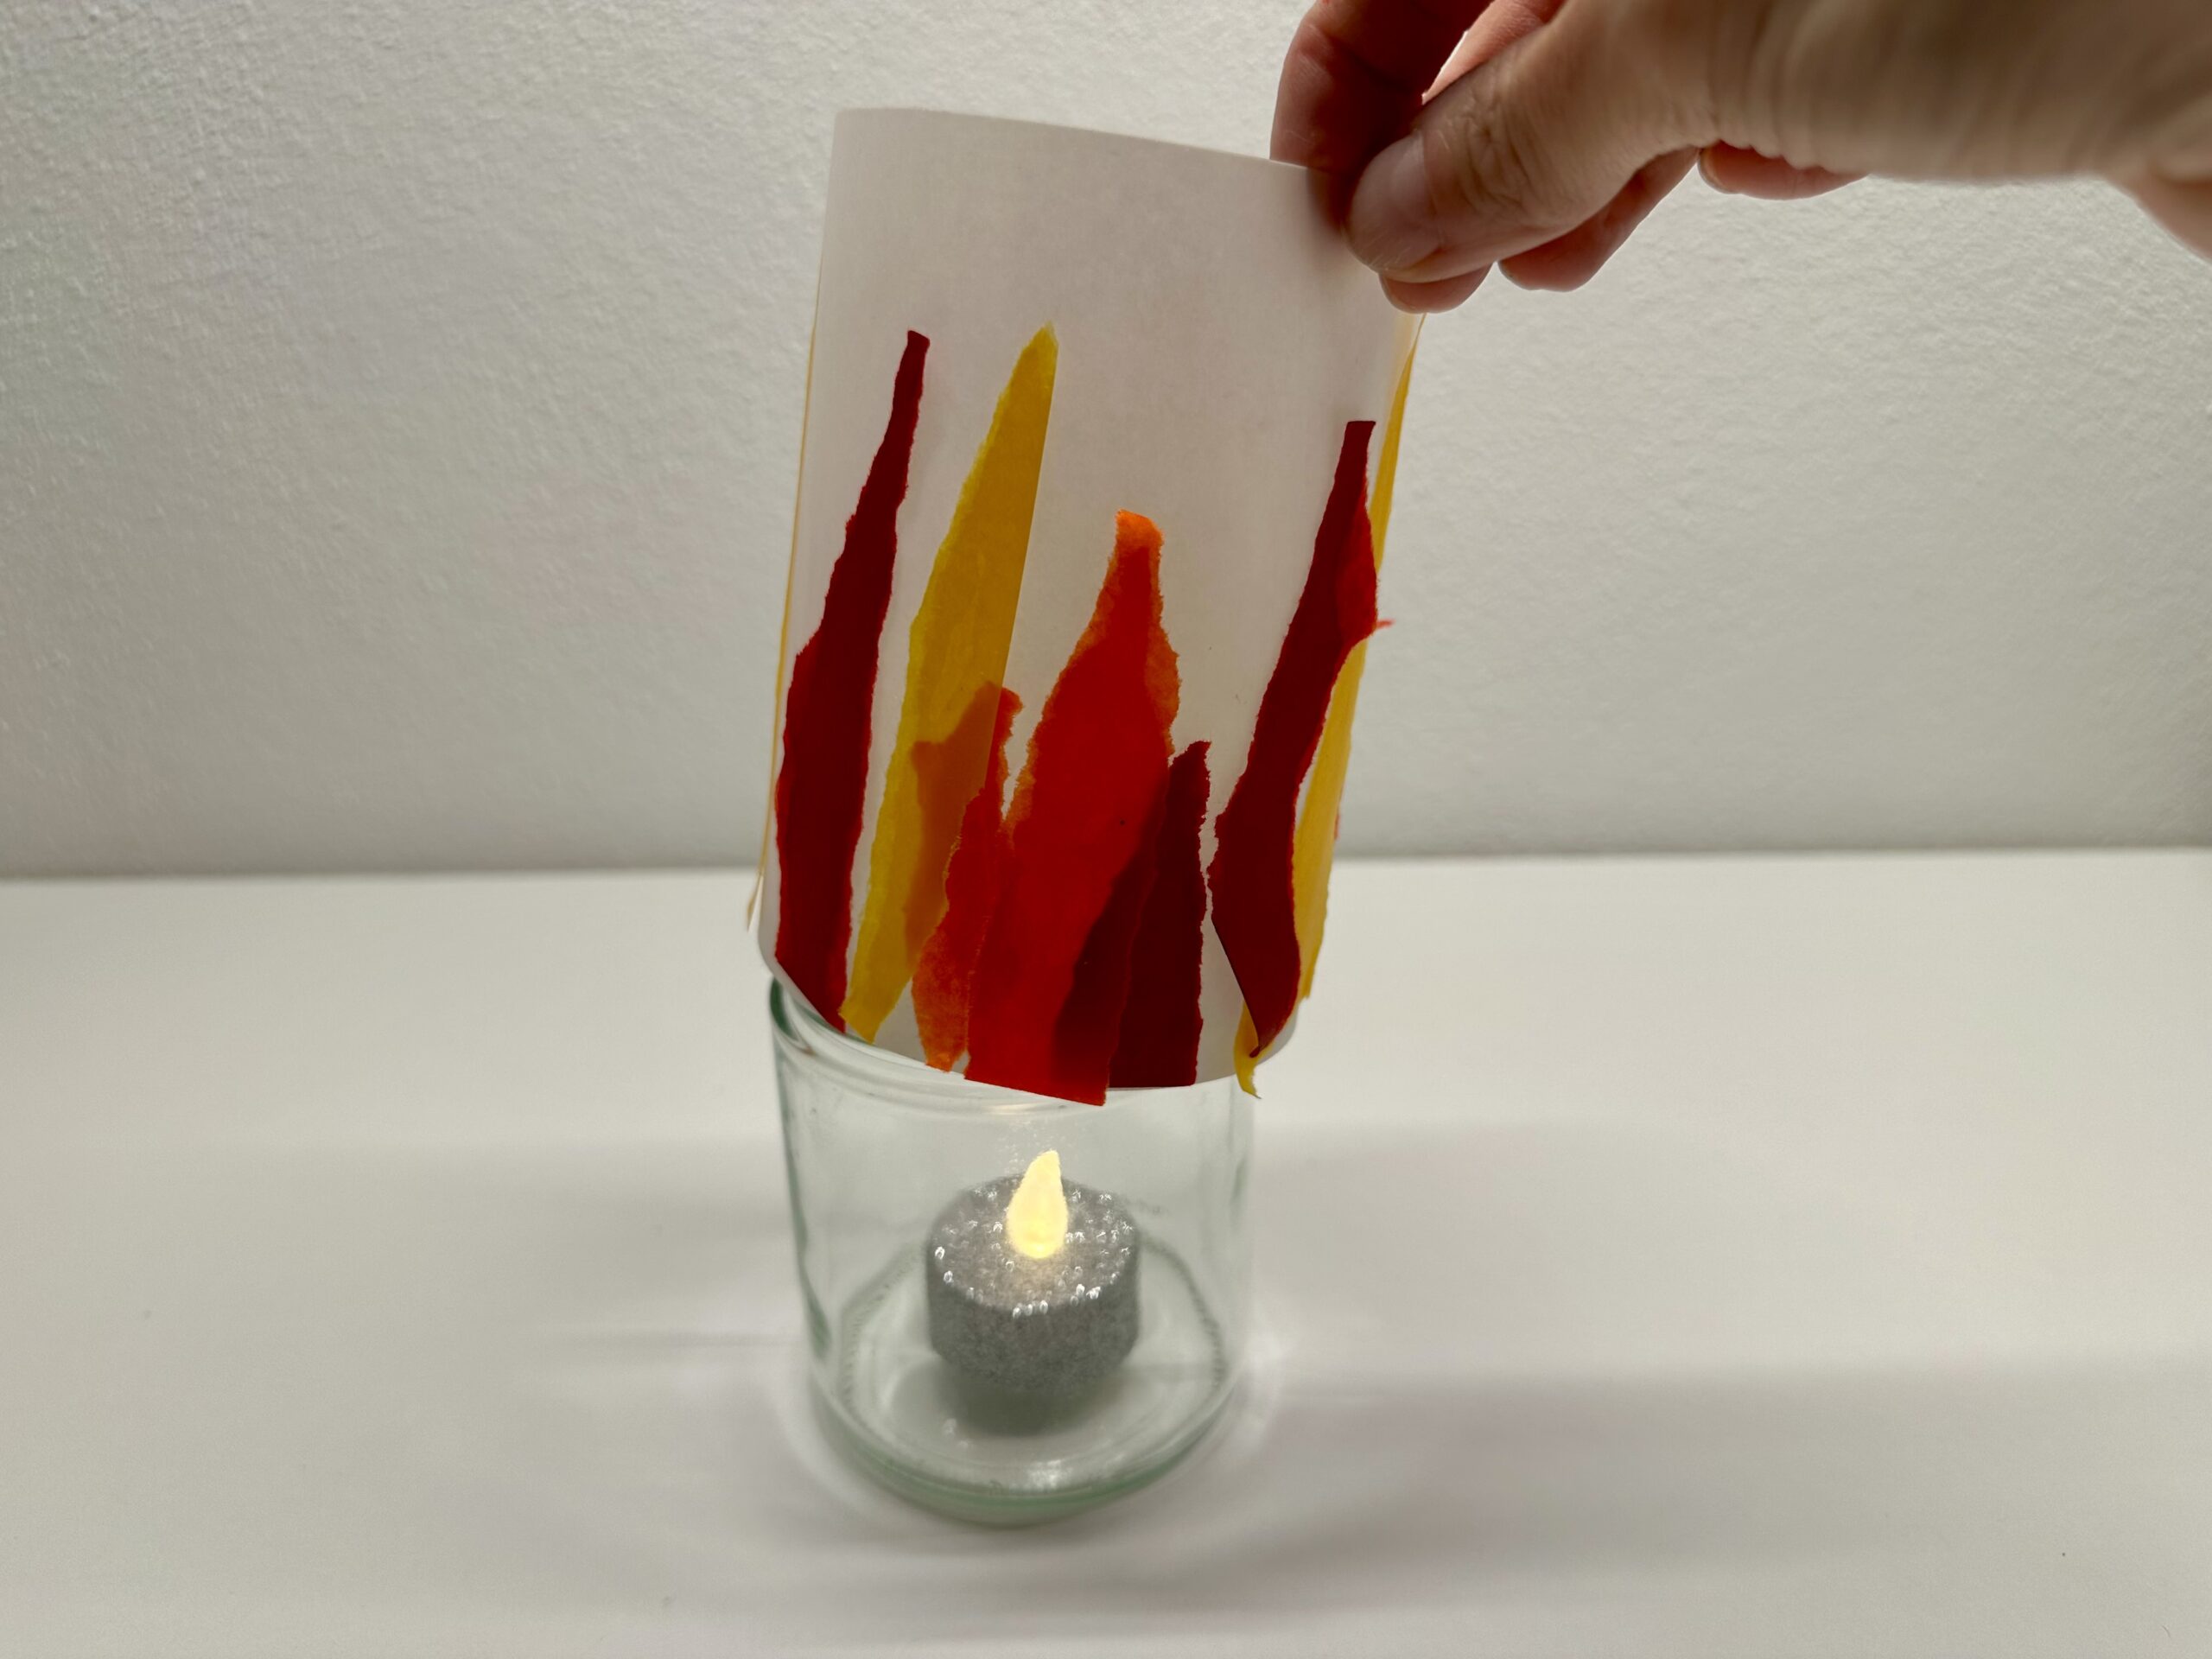 Bild zum Schritt 20 für das Bastel- und DIY-Abenteuer für Kinder: 'Nehmt ein Glas und stellt eine Kerze hinein (z.B. elektrisches...'